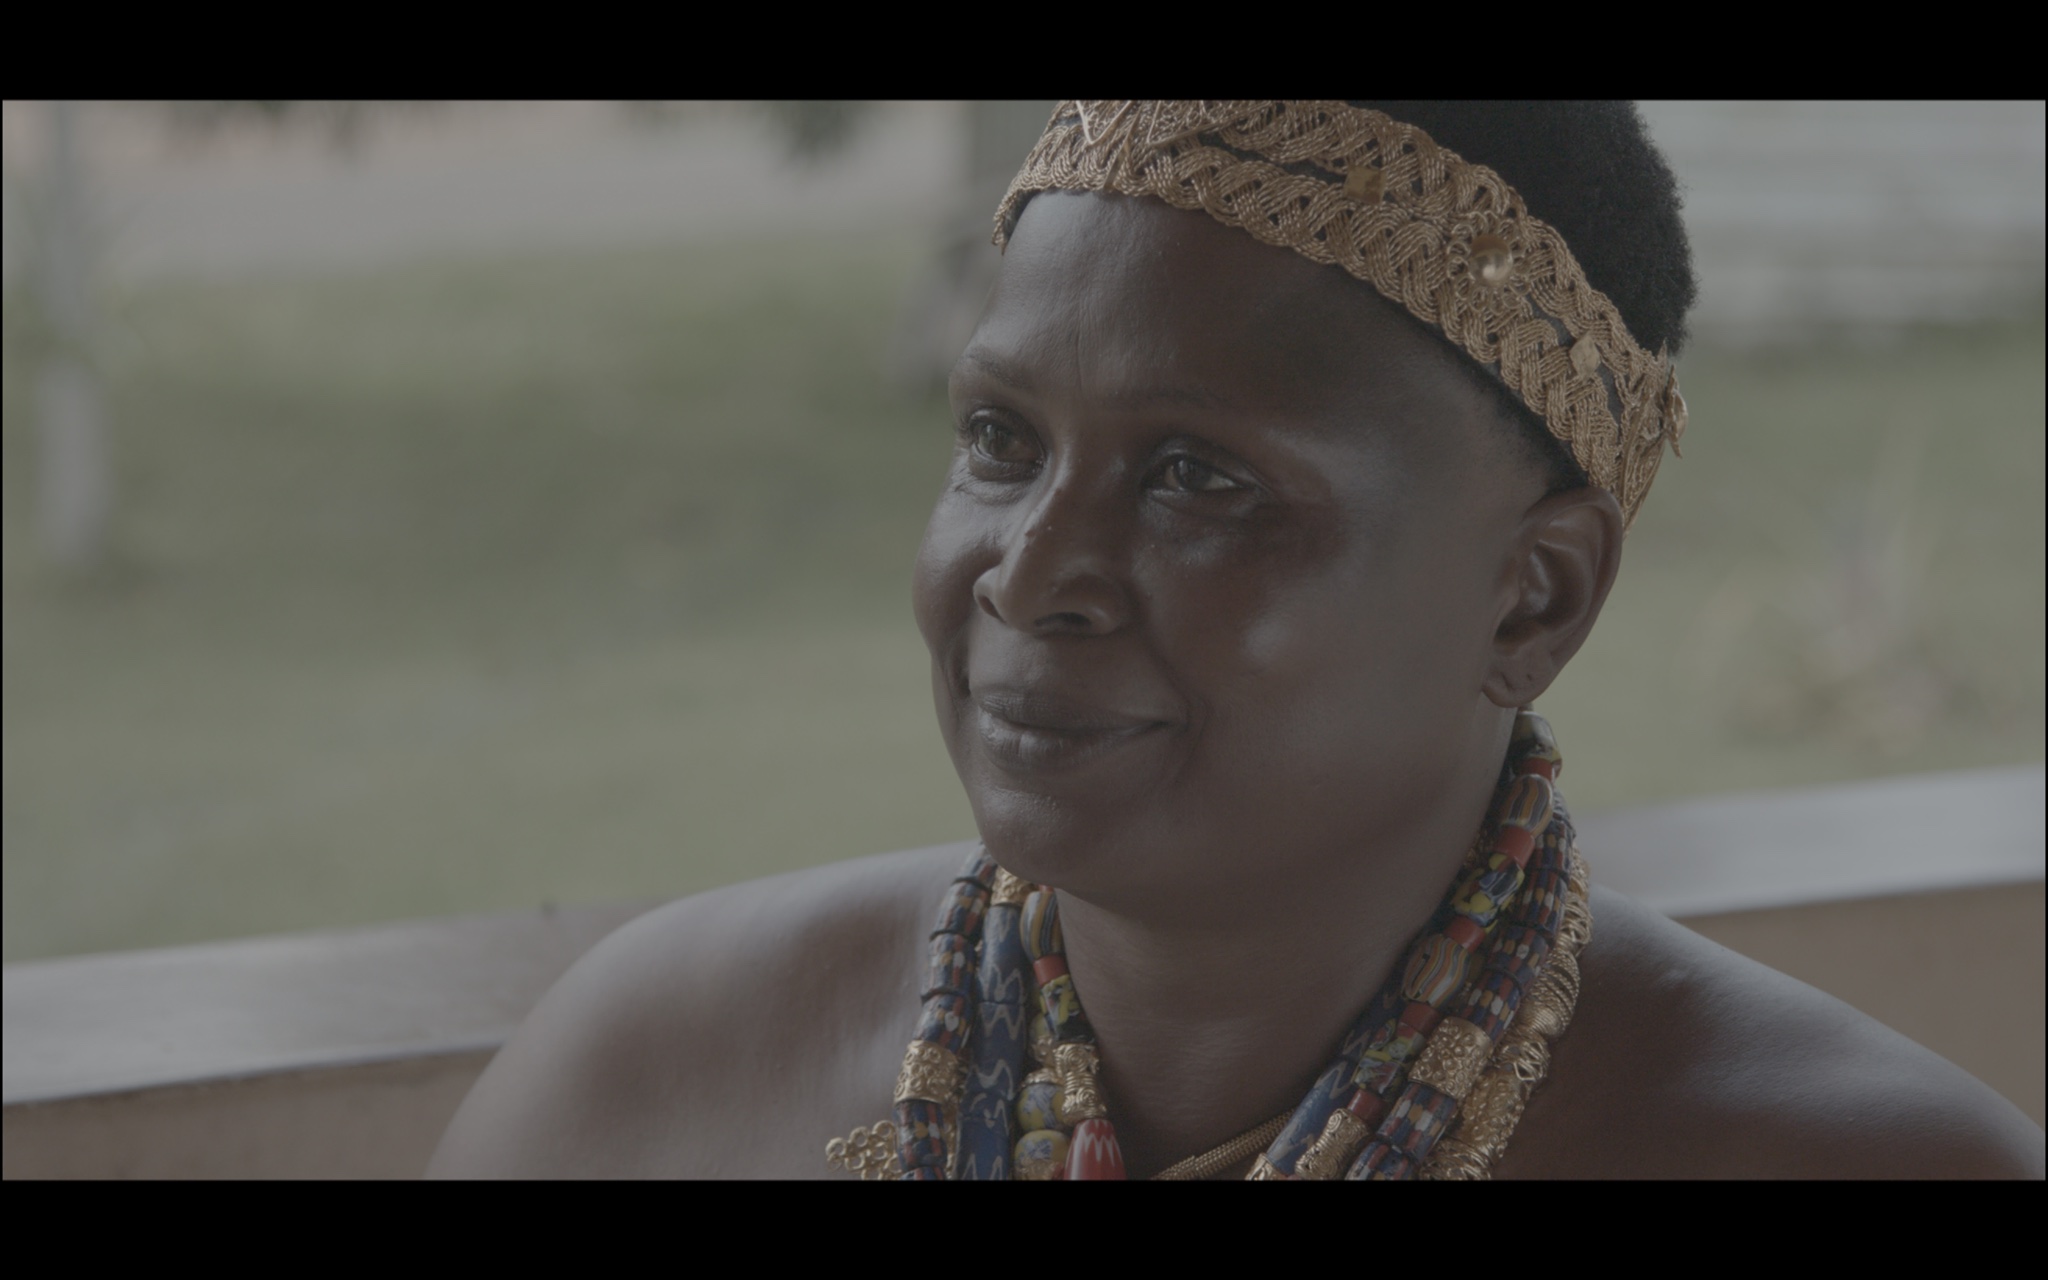 Аманфопон. Тётя Джейн &ndash; Синтия &ndash; отвечает на наши вопросы перед инаугурацией. Кадры из документального фильма, рабочее название фильма &ndash; &laquo;Африка подскажет&raquo;